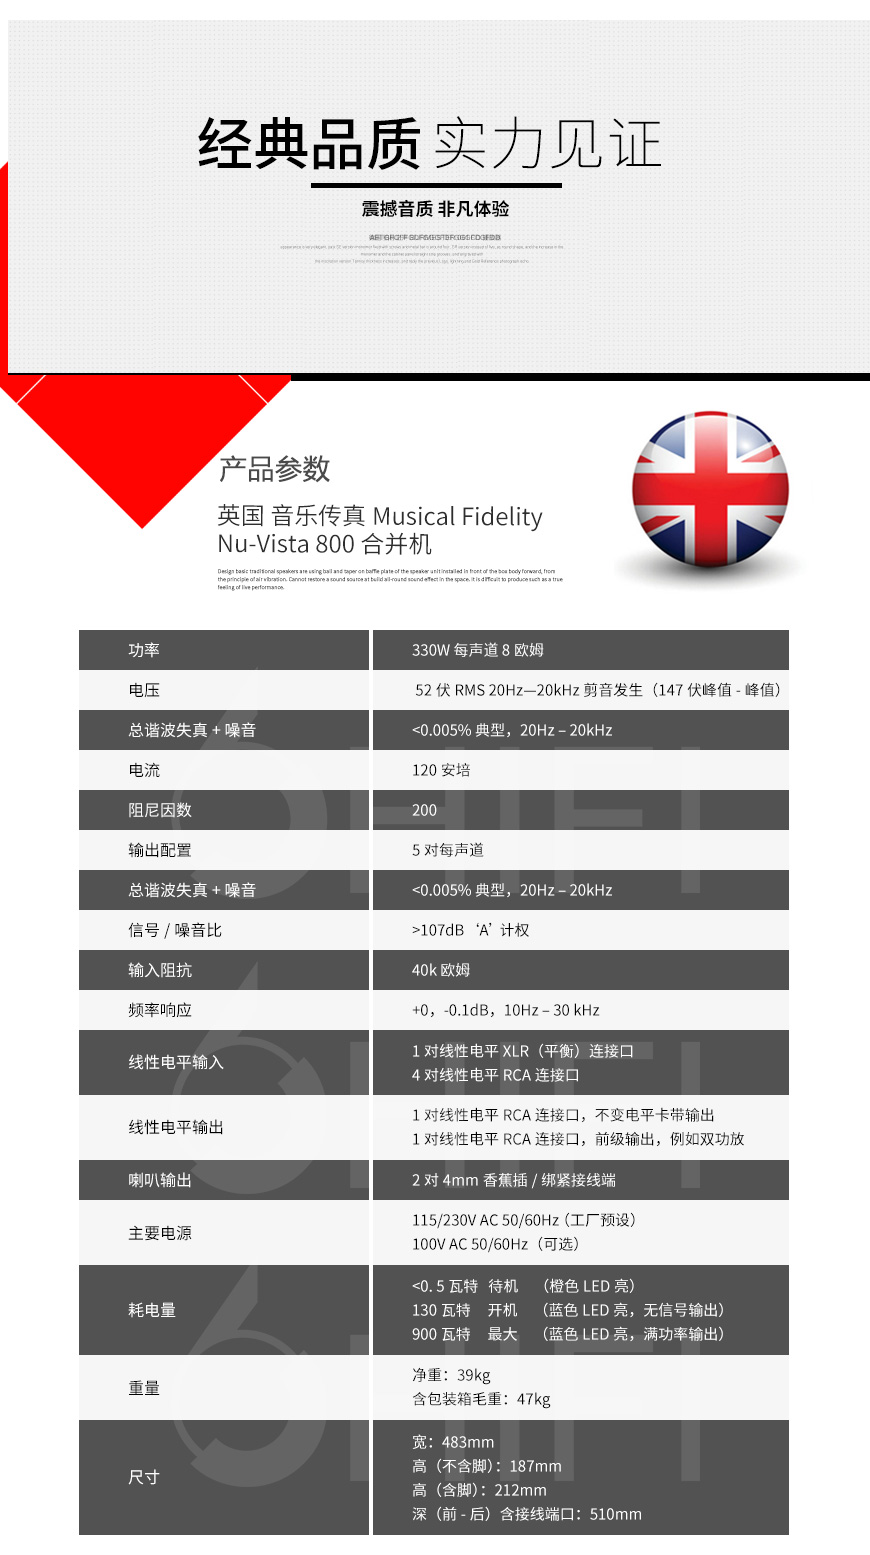 英国 音乐传真 Musical Fidelity Nu-Vista 800 合并机,音乐传真 合并机,英国 Musical Fidelity Nu-Vista 800,英国 音乐传真